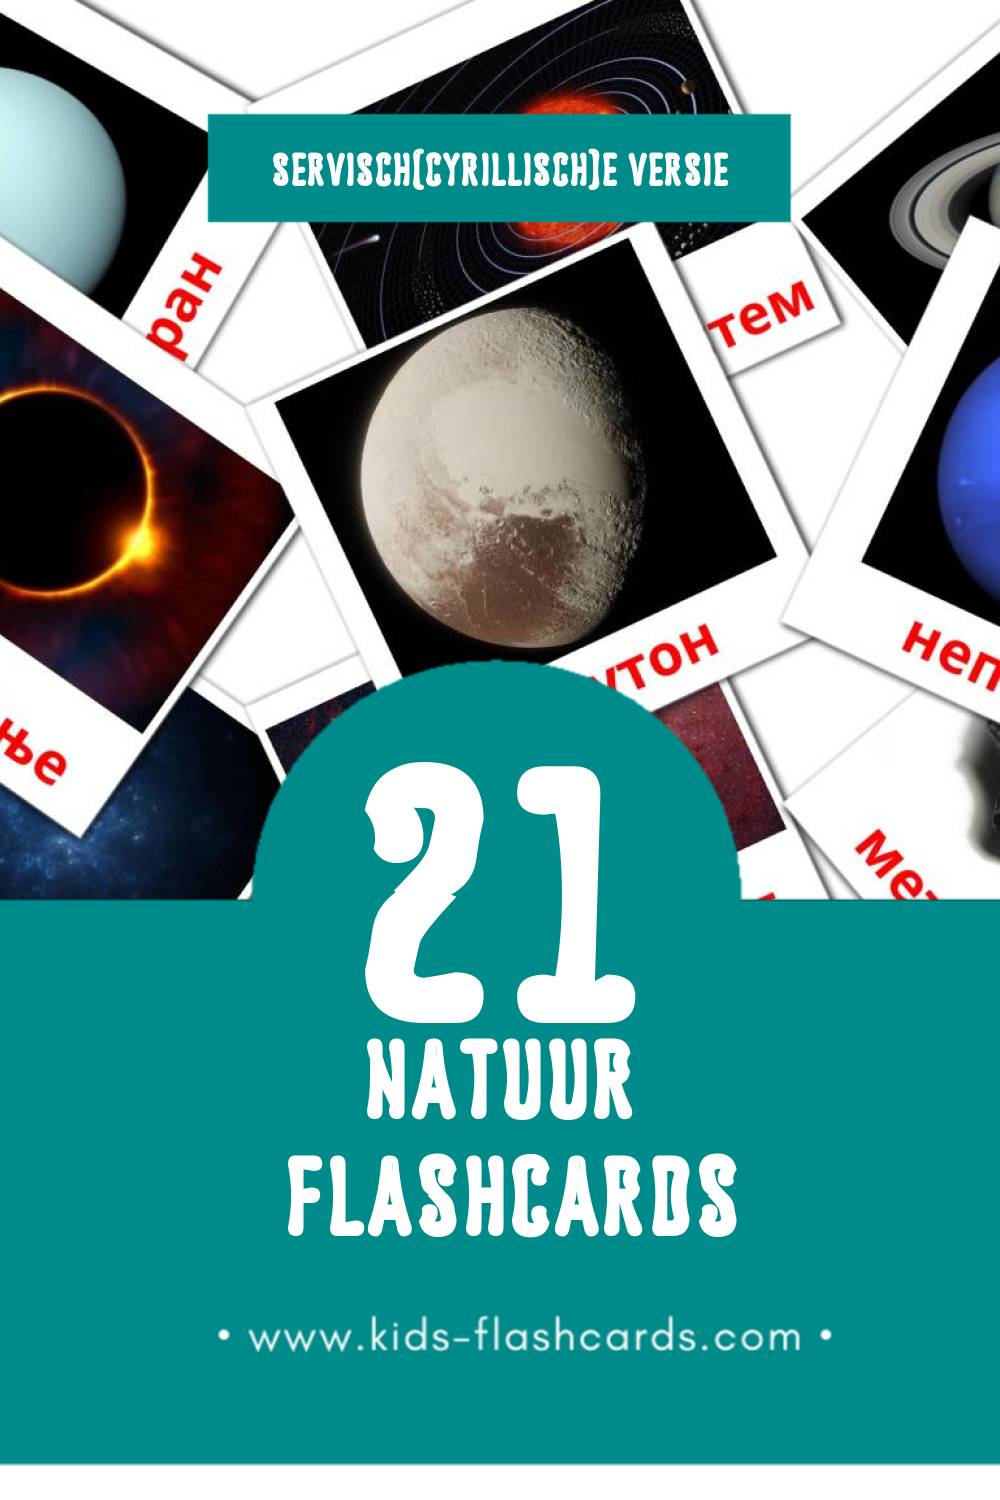 Visuele Природа Flashcards voor Kleuters (21 kaarten in het Servisch(cyrillisch))